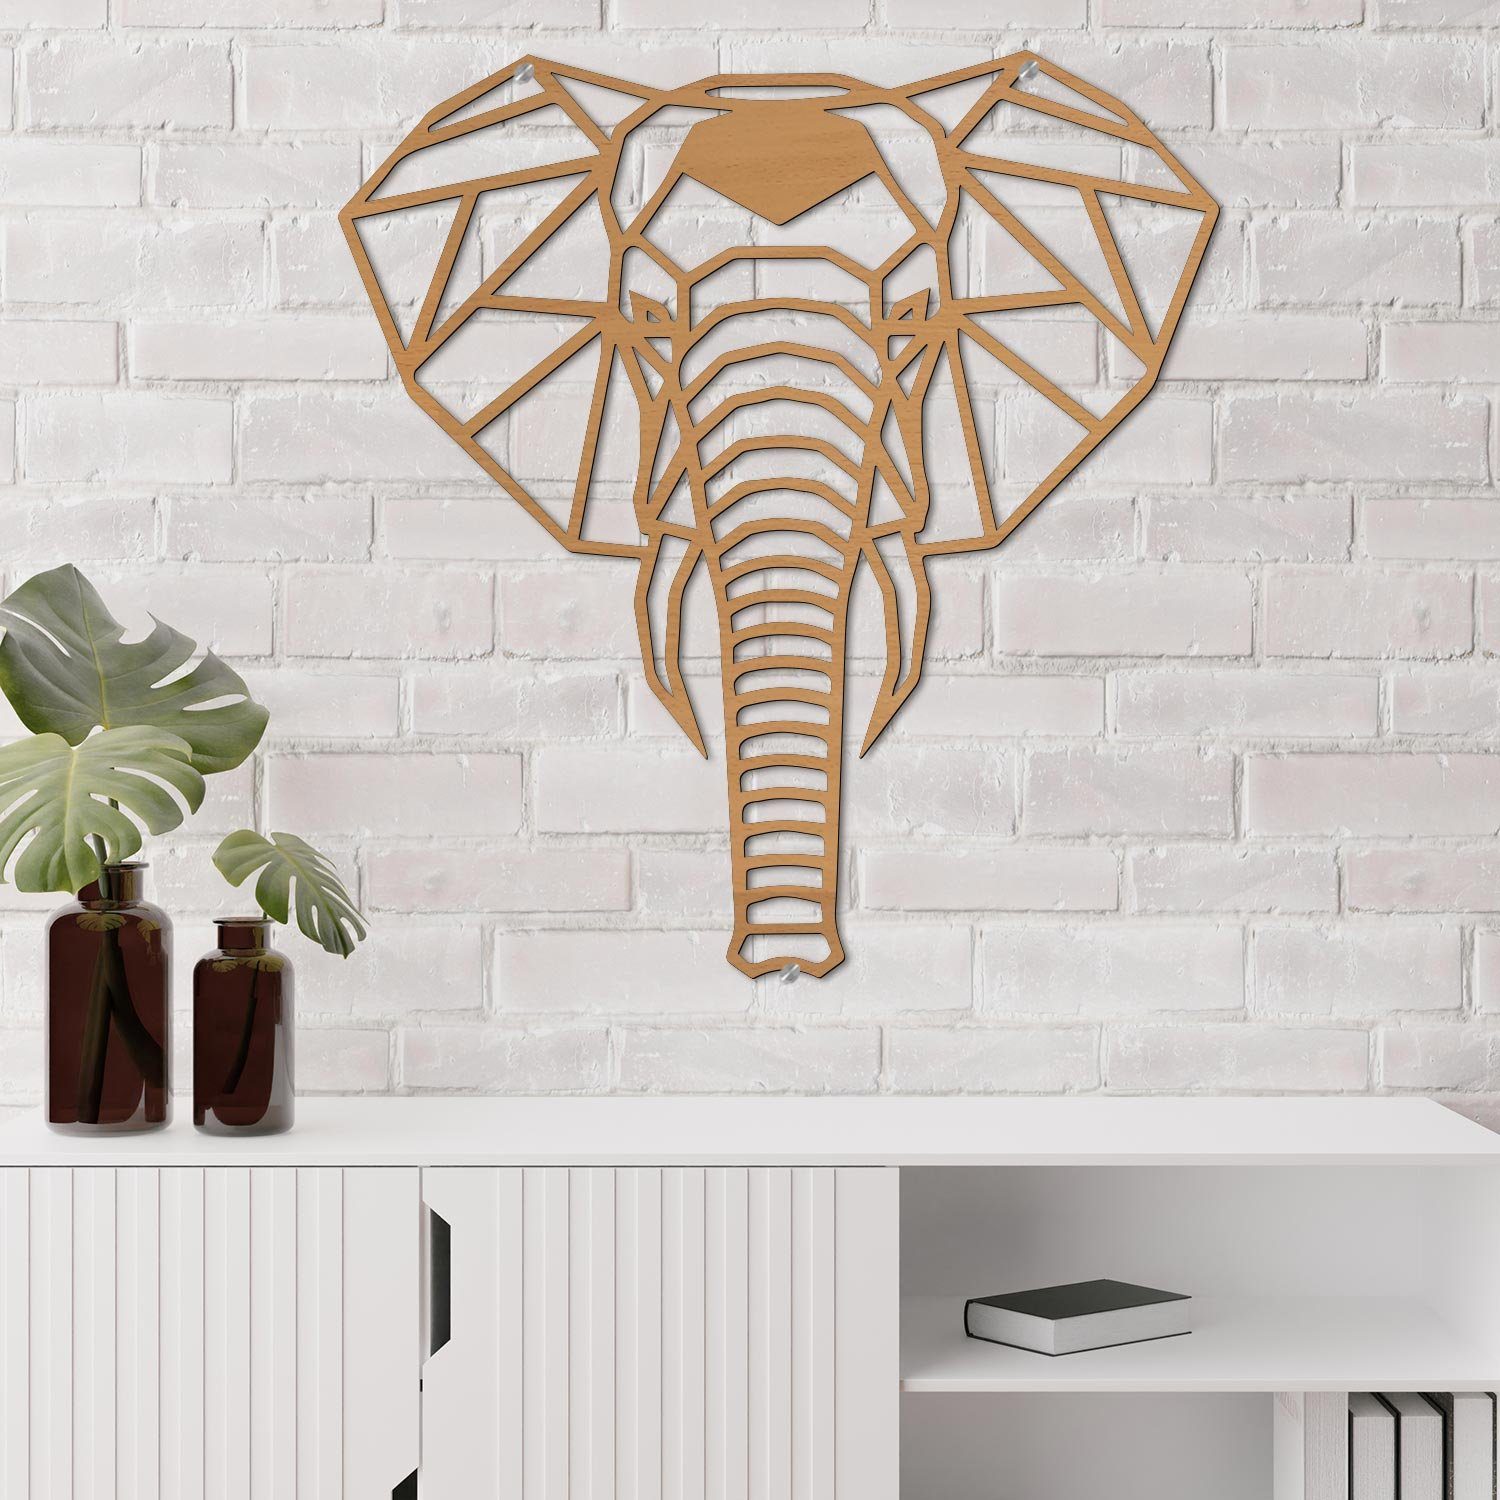 Namofactur LED Wandleuchte Elefant - Deko integriert, Wanddekoobjekt Leuchte mit Dekoobjekt Wand Holz LED Warmweiß, batteriebetrieben fest Wohnzimmer Elefanten-Motiv Lampe, aus 